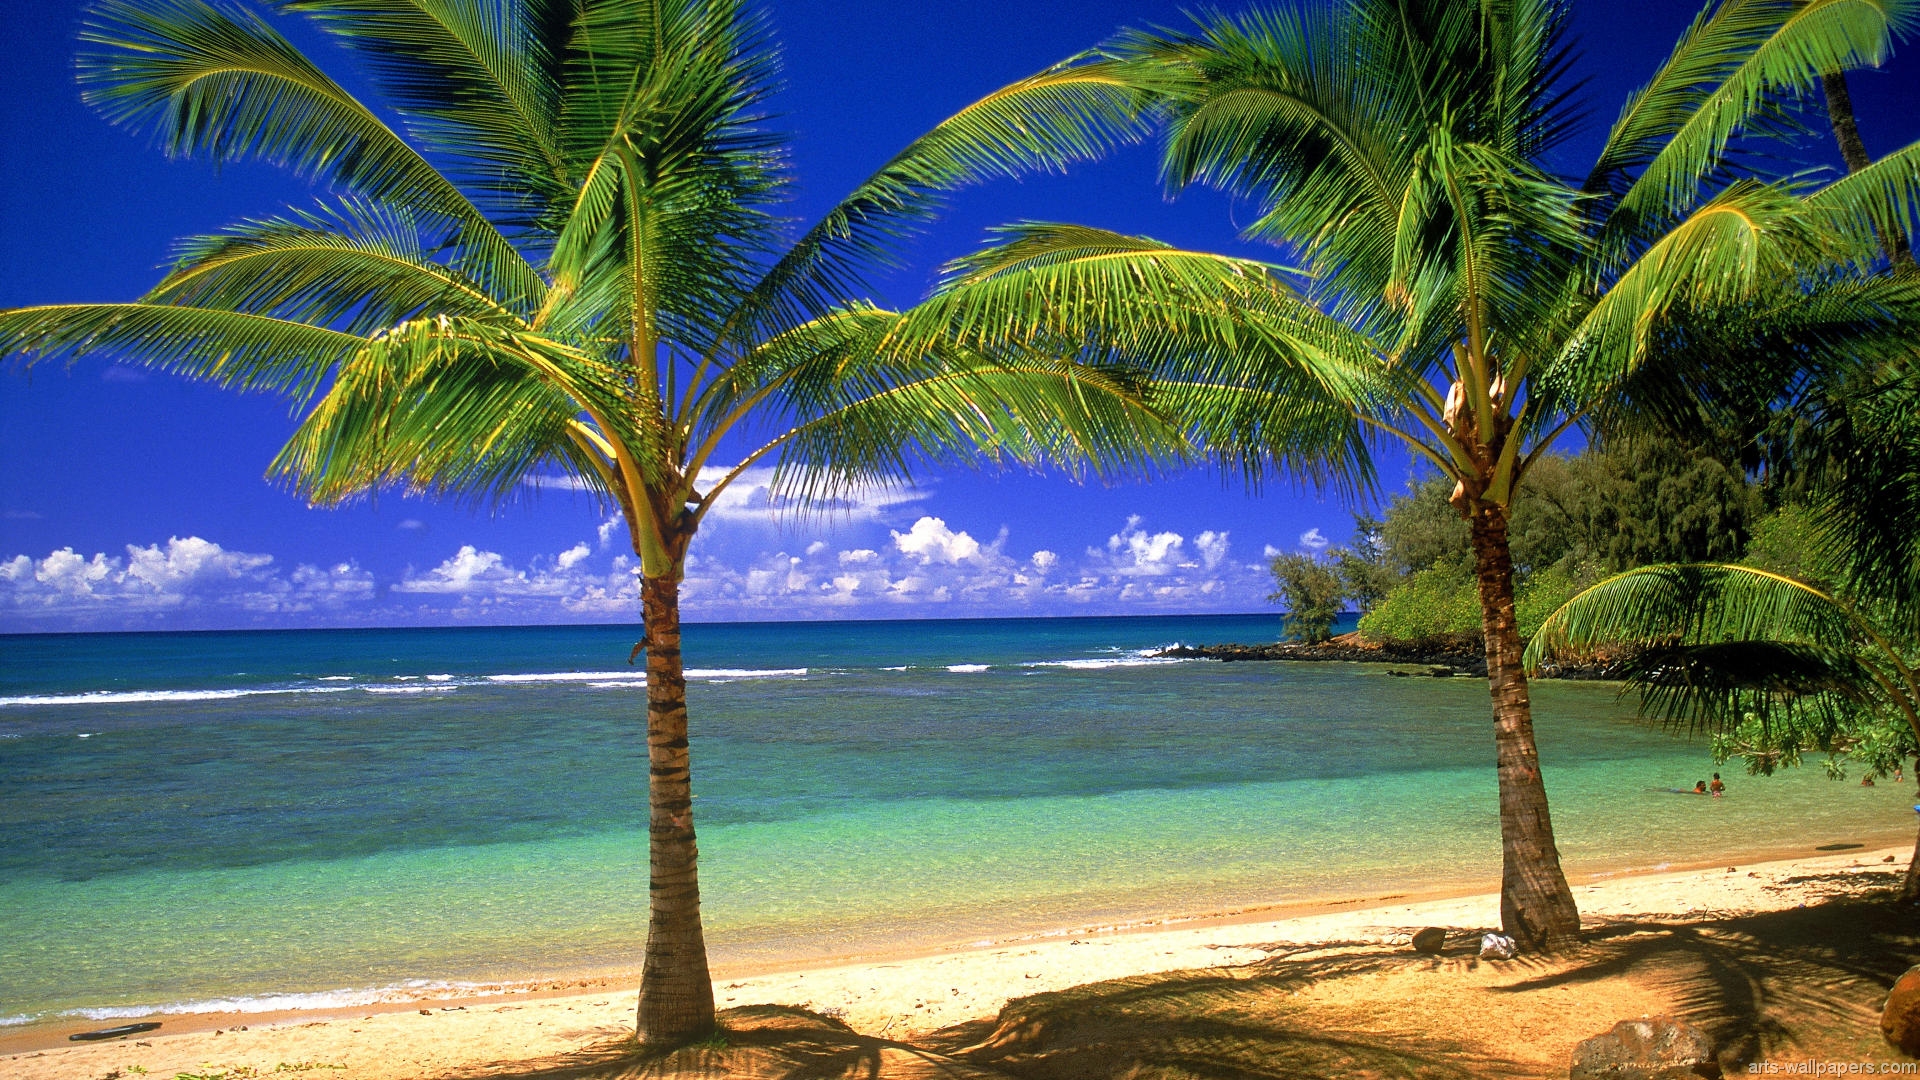 Tropical Paradise Wallpapers Hawaii Maldives Tahiti Islands Beach